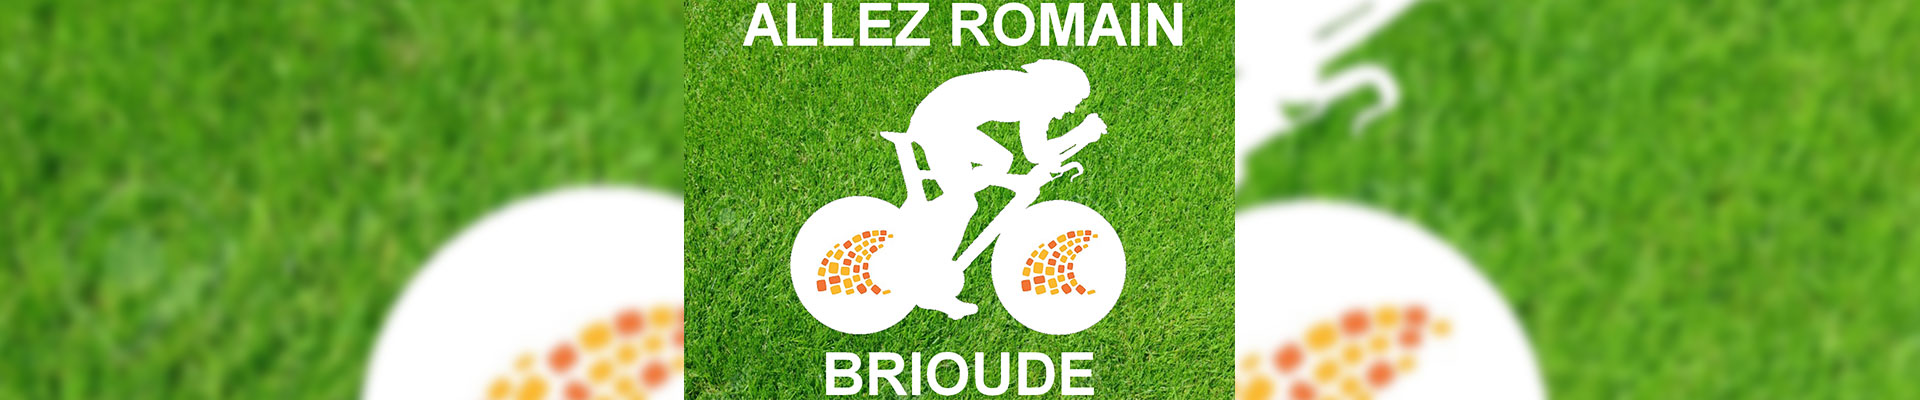 Monumentaal logo Tour de France, communicatie, gemeenschap, bedrijf